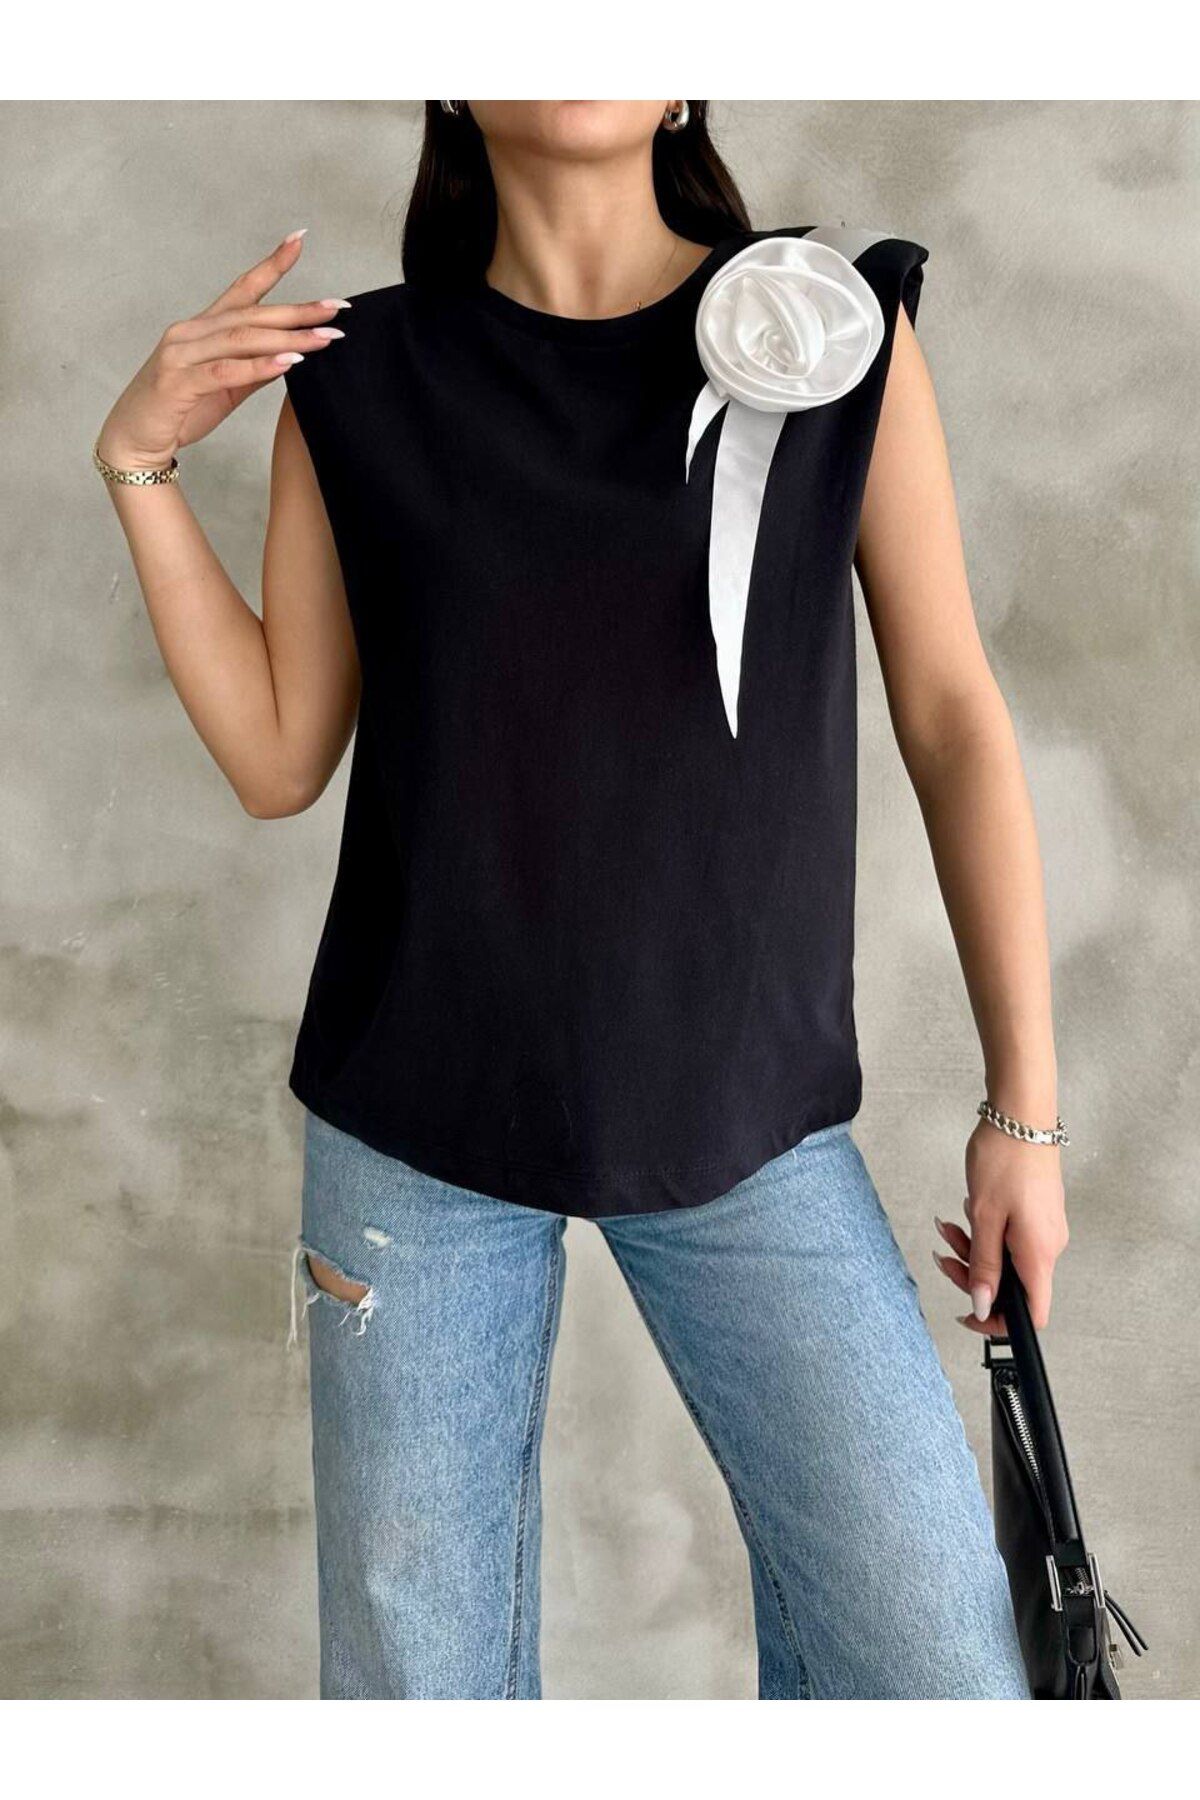 DuSiMoDa Kadın Siyah Vatkalı Pamuklu Kolsuz T-Shirt Beyaz Kurdeleli Gül Detayı Standart Beden